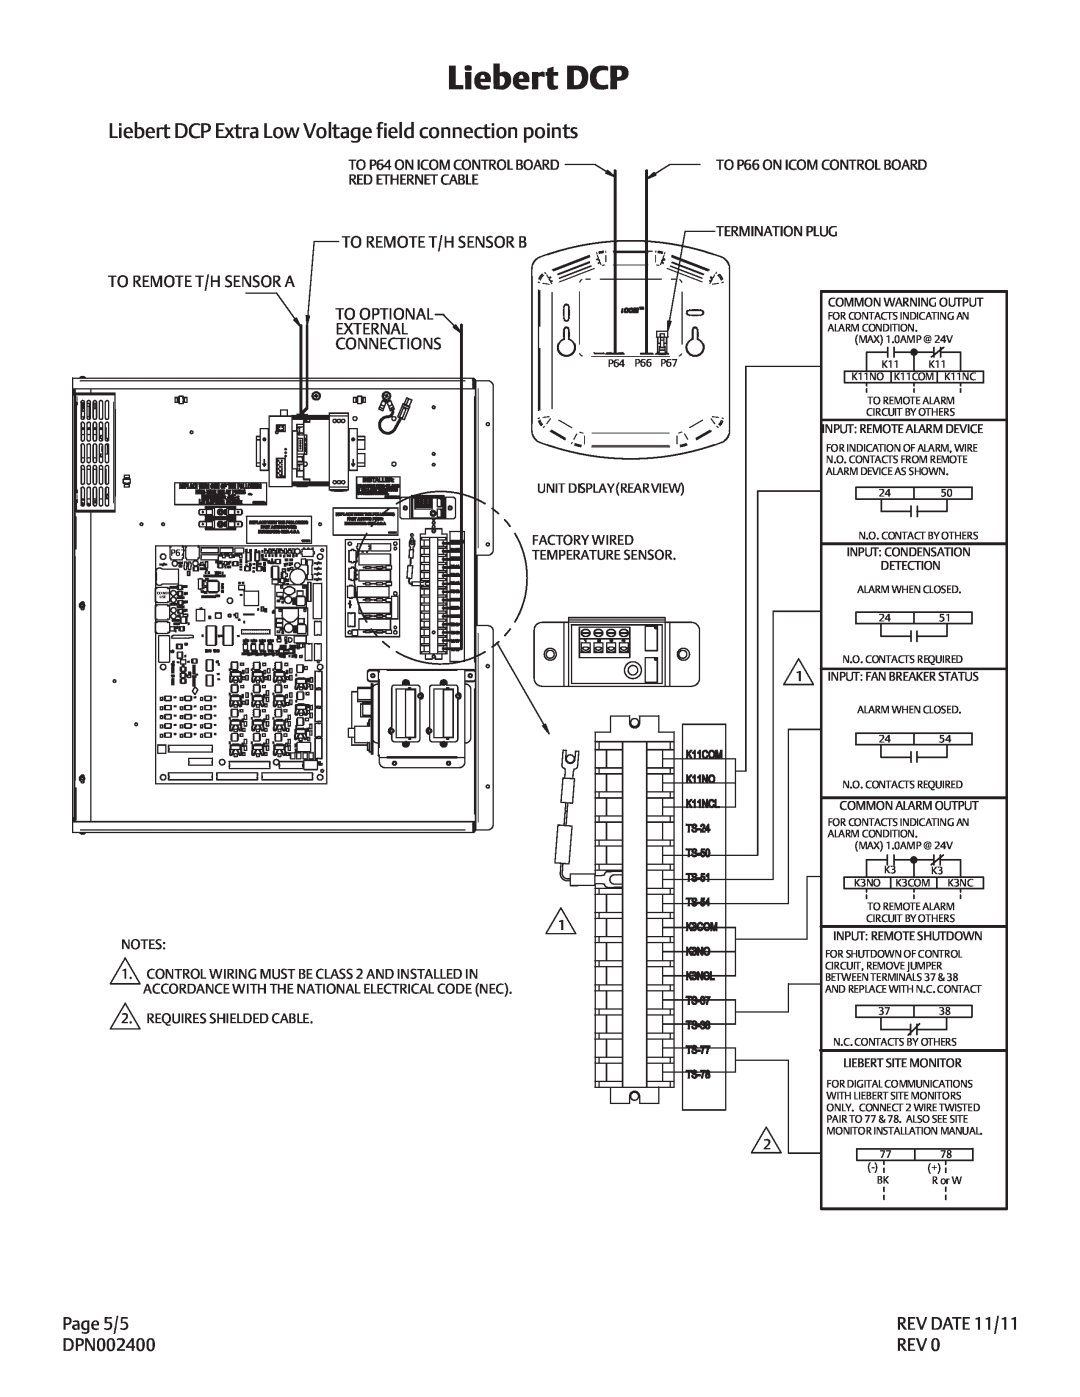 Liebert DPN002400 manual Liebert DCP, REV DATE 05/11, PAGE 6/6, To Remote T/H Sensor B, To Remote T/H Sensor A, To Optional 